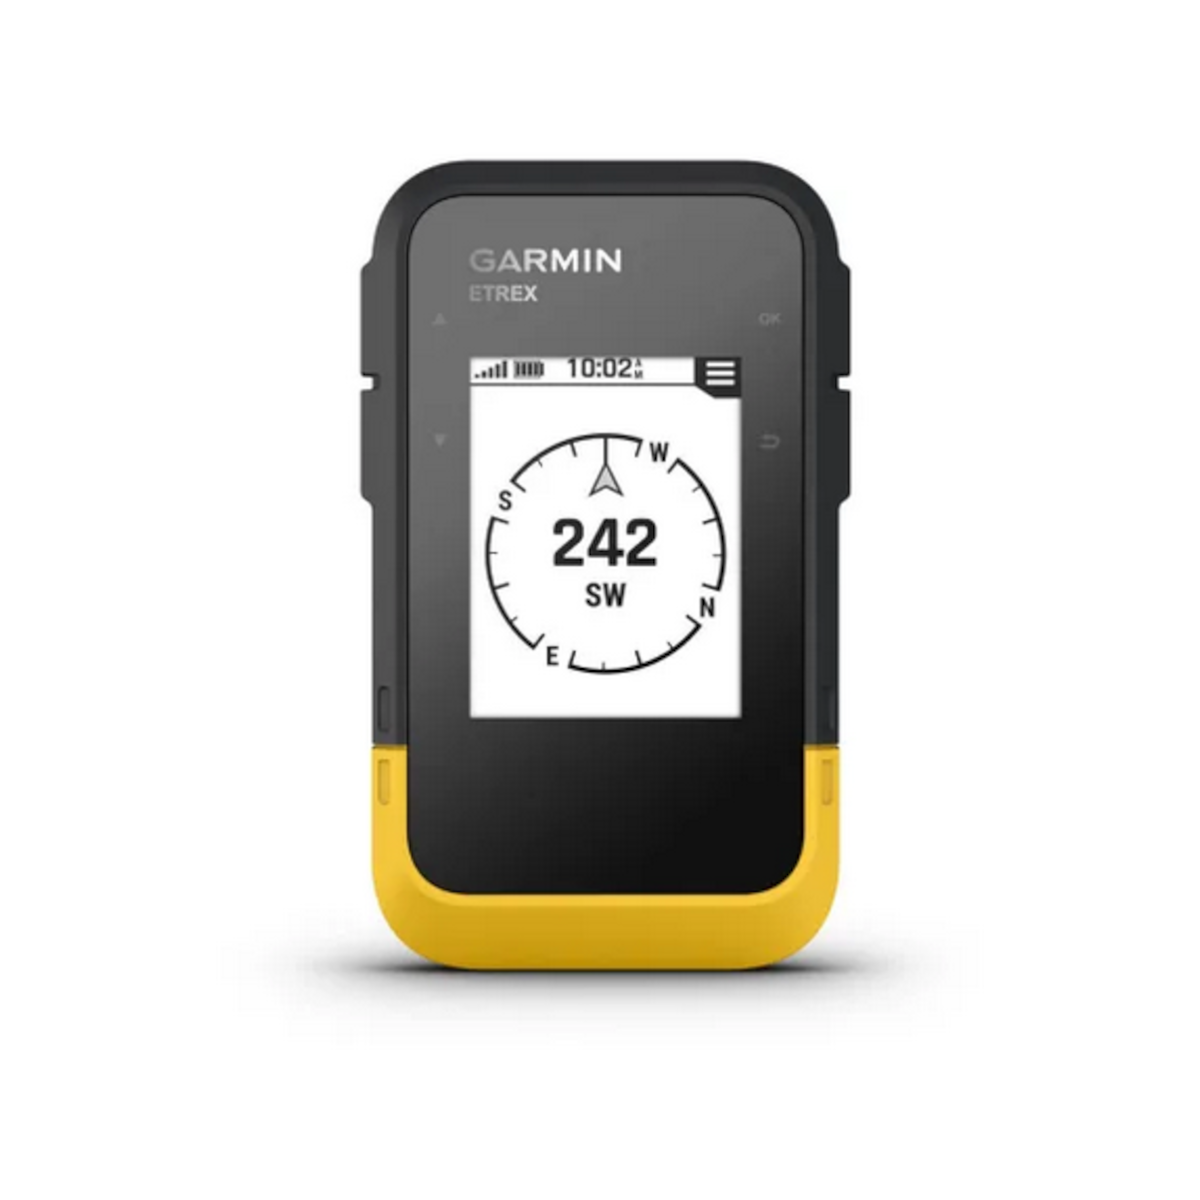 Garmin eTrex SE GPS-handheld